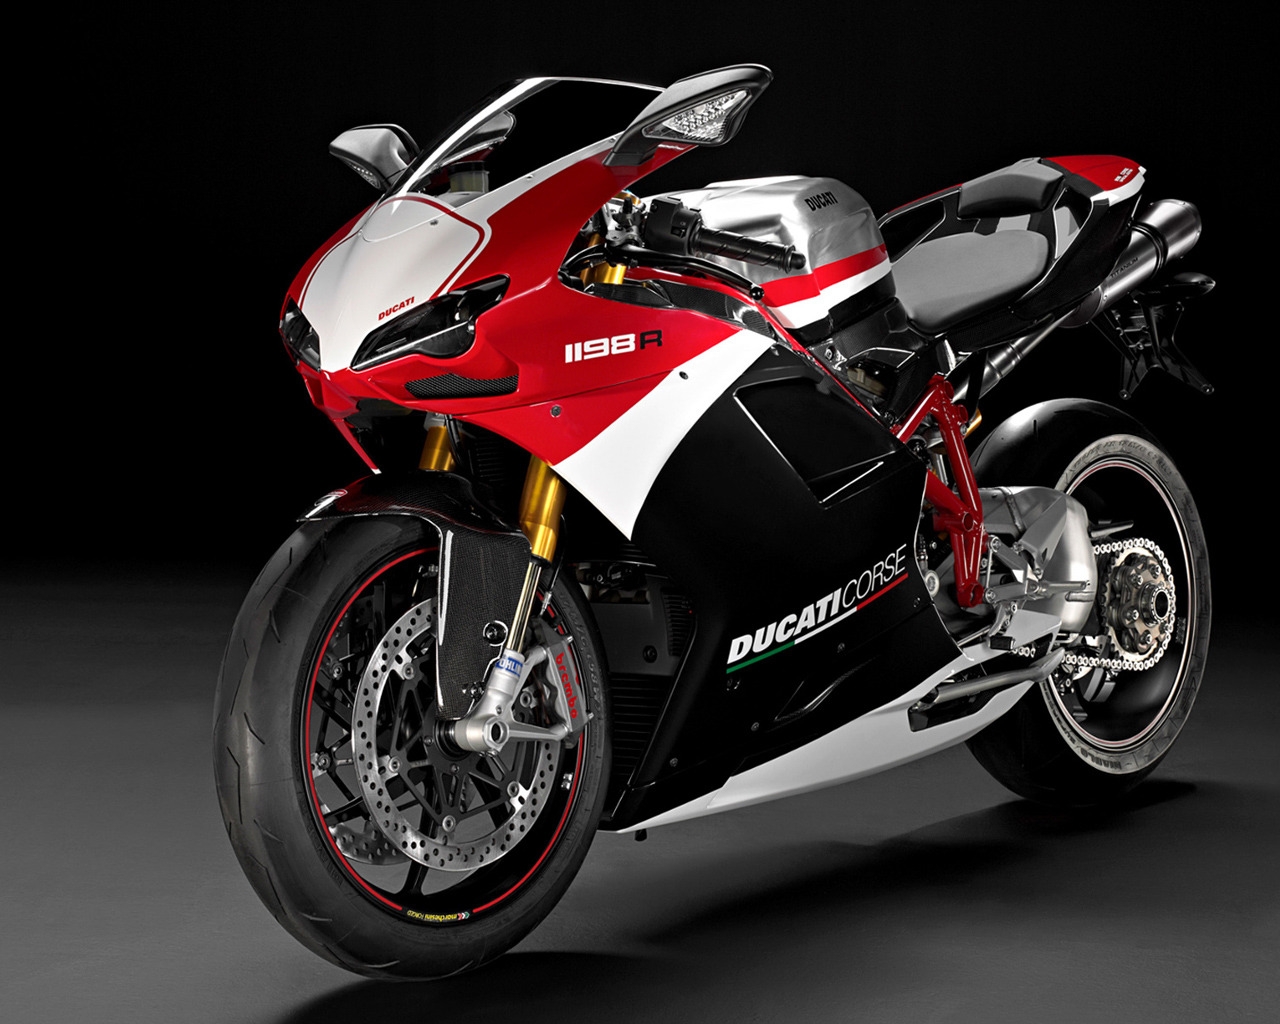 Ducati Superbike-1198-R-Corse for 1280 x 1024 resolution